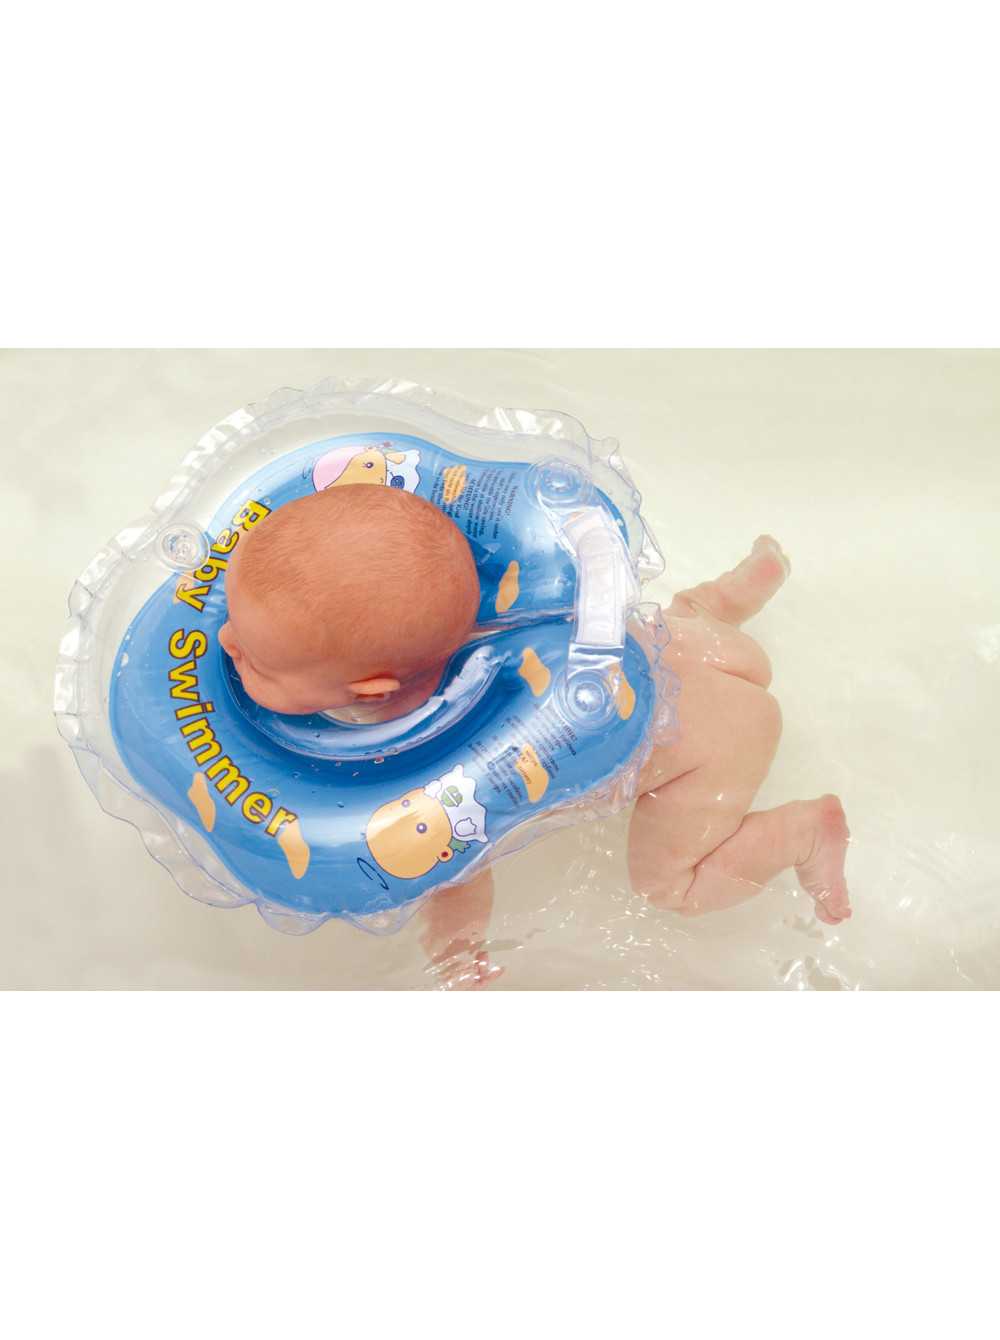 Комаровский круг для купания. доктор комаровский о купании новорожденных: зачем младенцу круг для плавания?